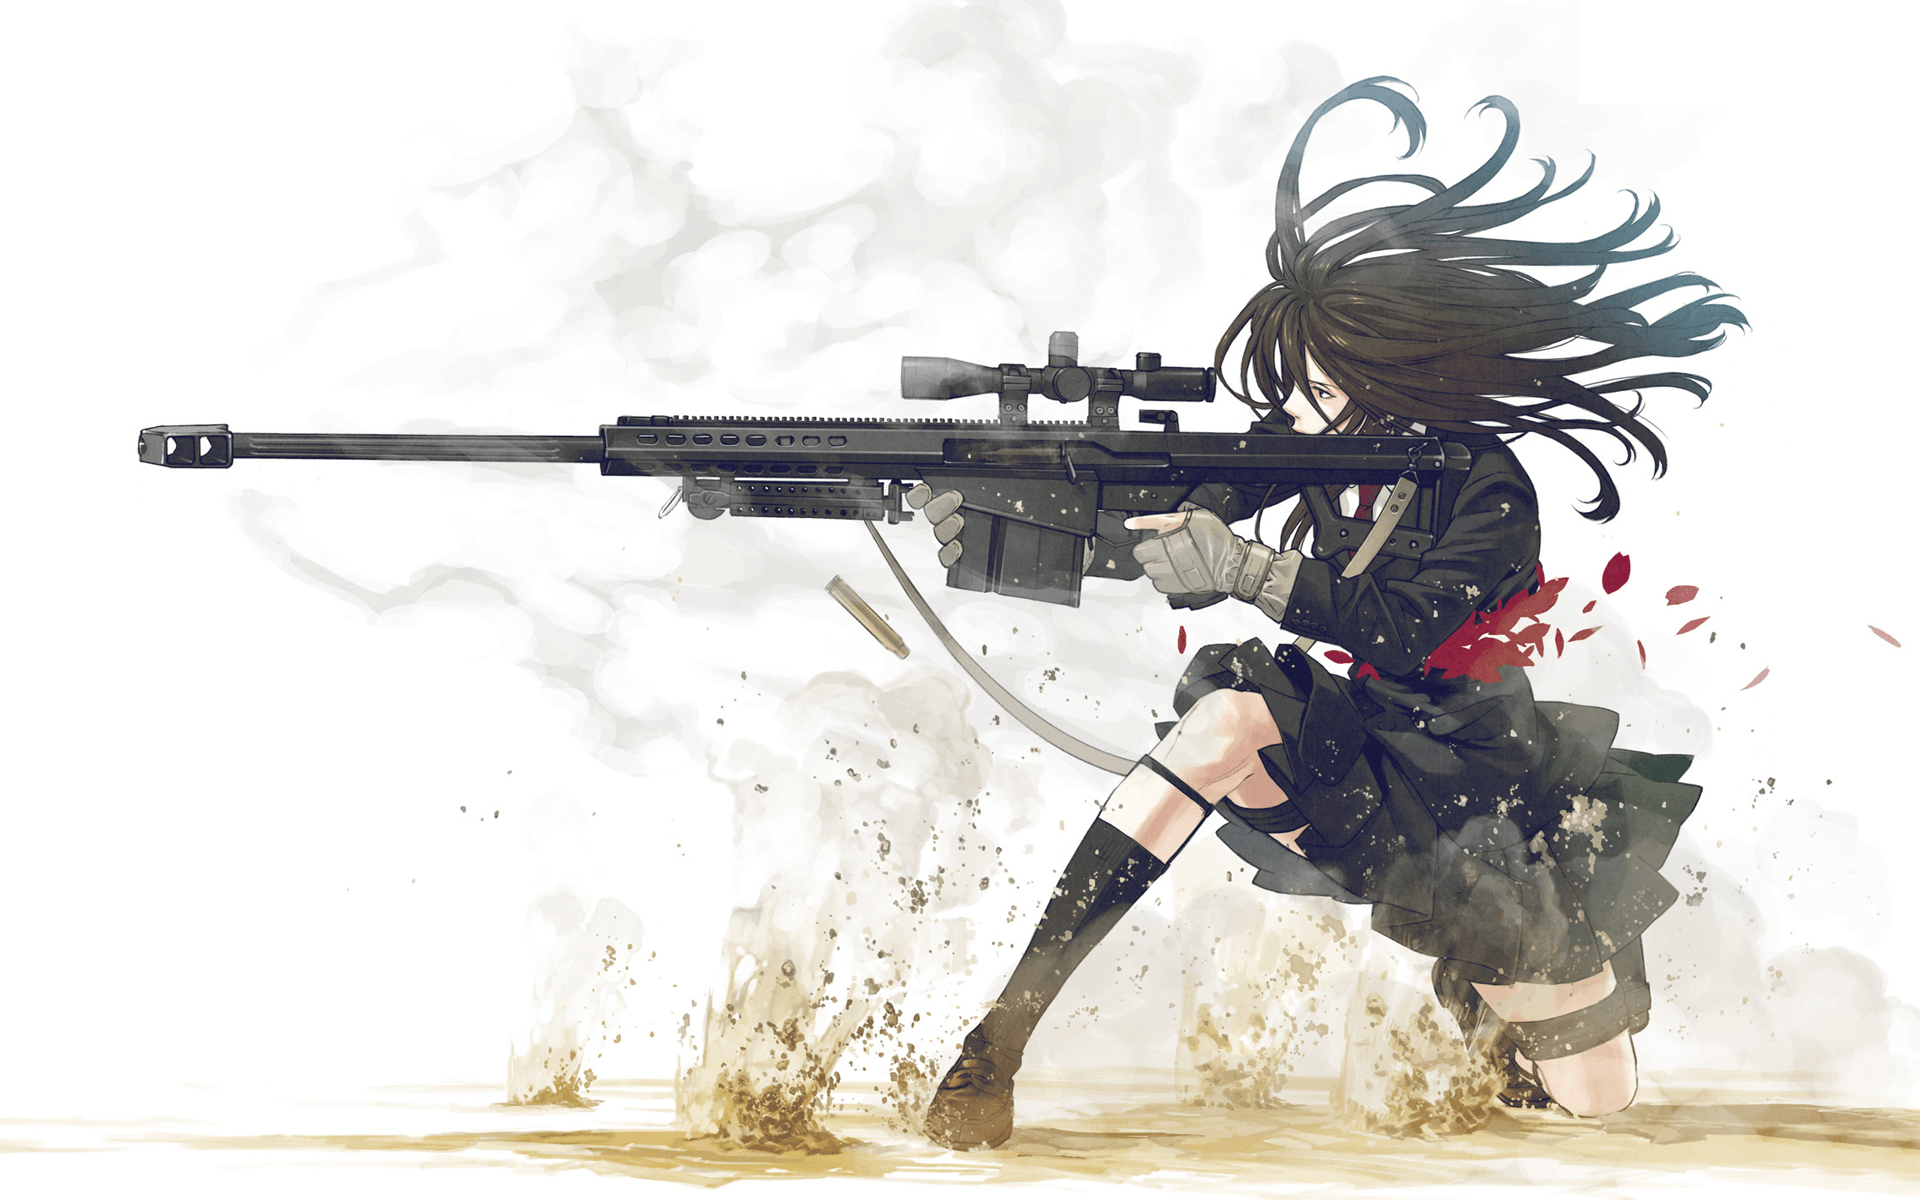 HD anime shotgun wallpapers | Peakpx